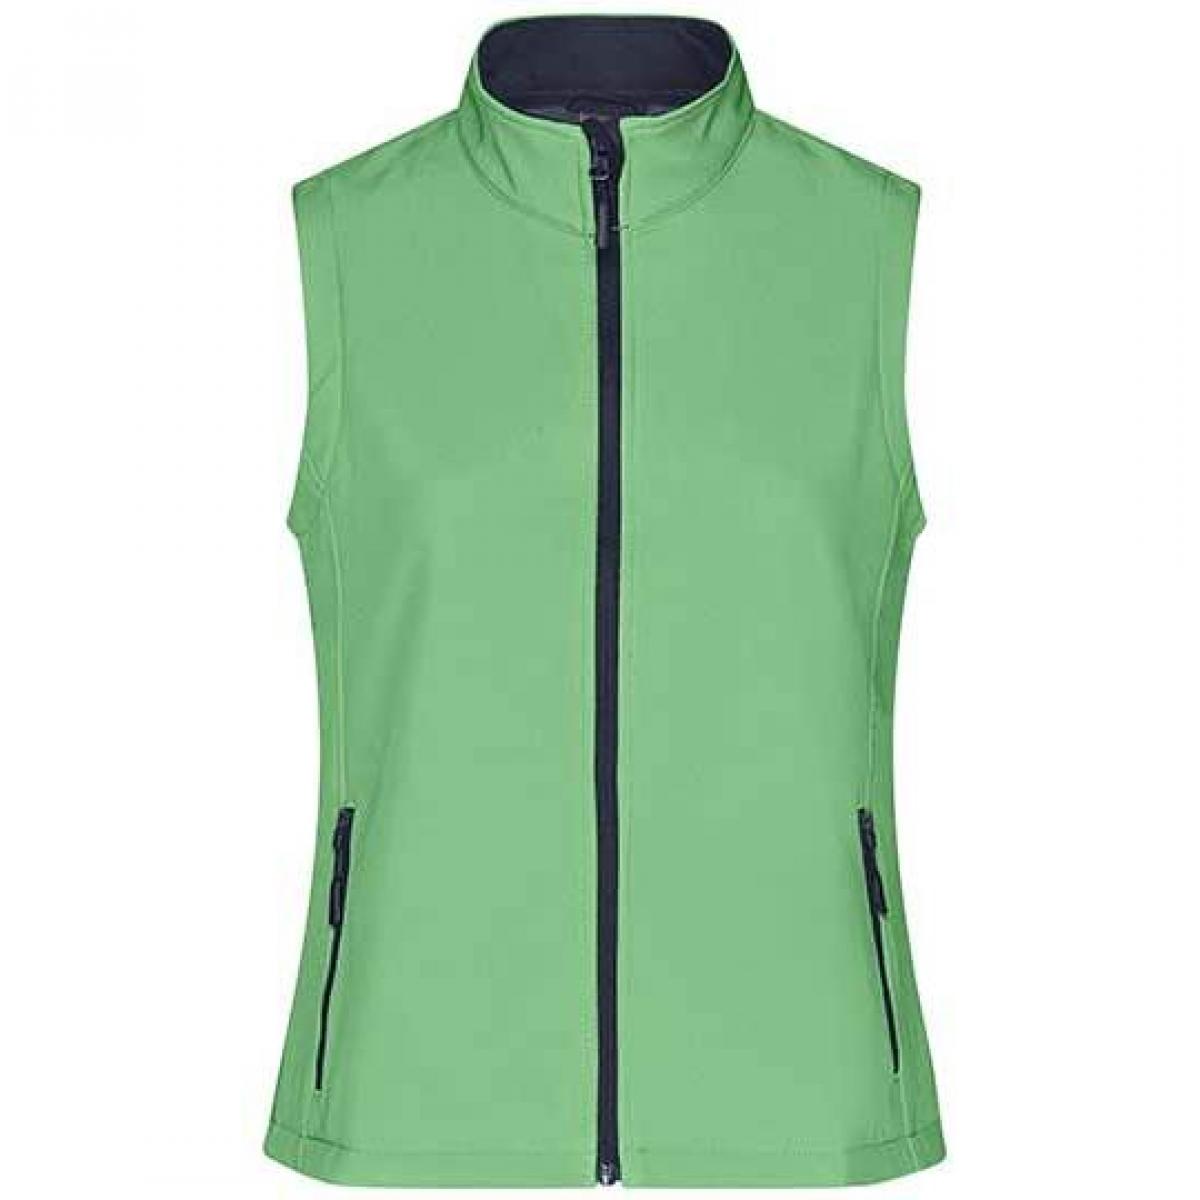 Hersteller: James+Nicholson Herstellernummer: JN1127 Artikelbezeichnung: Damen Promo Softshell Vest / Wasserabweisend, winddicht Farbe: Green/Navy